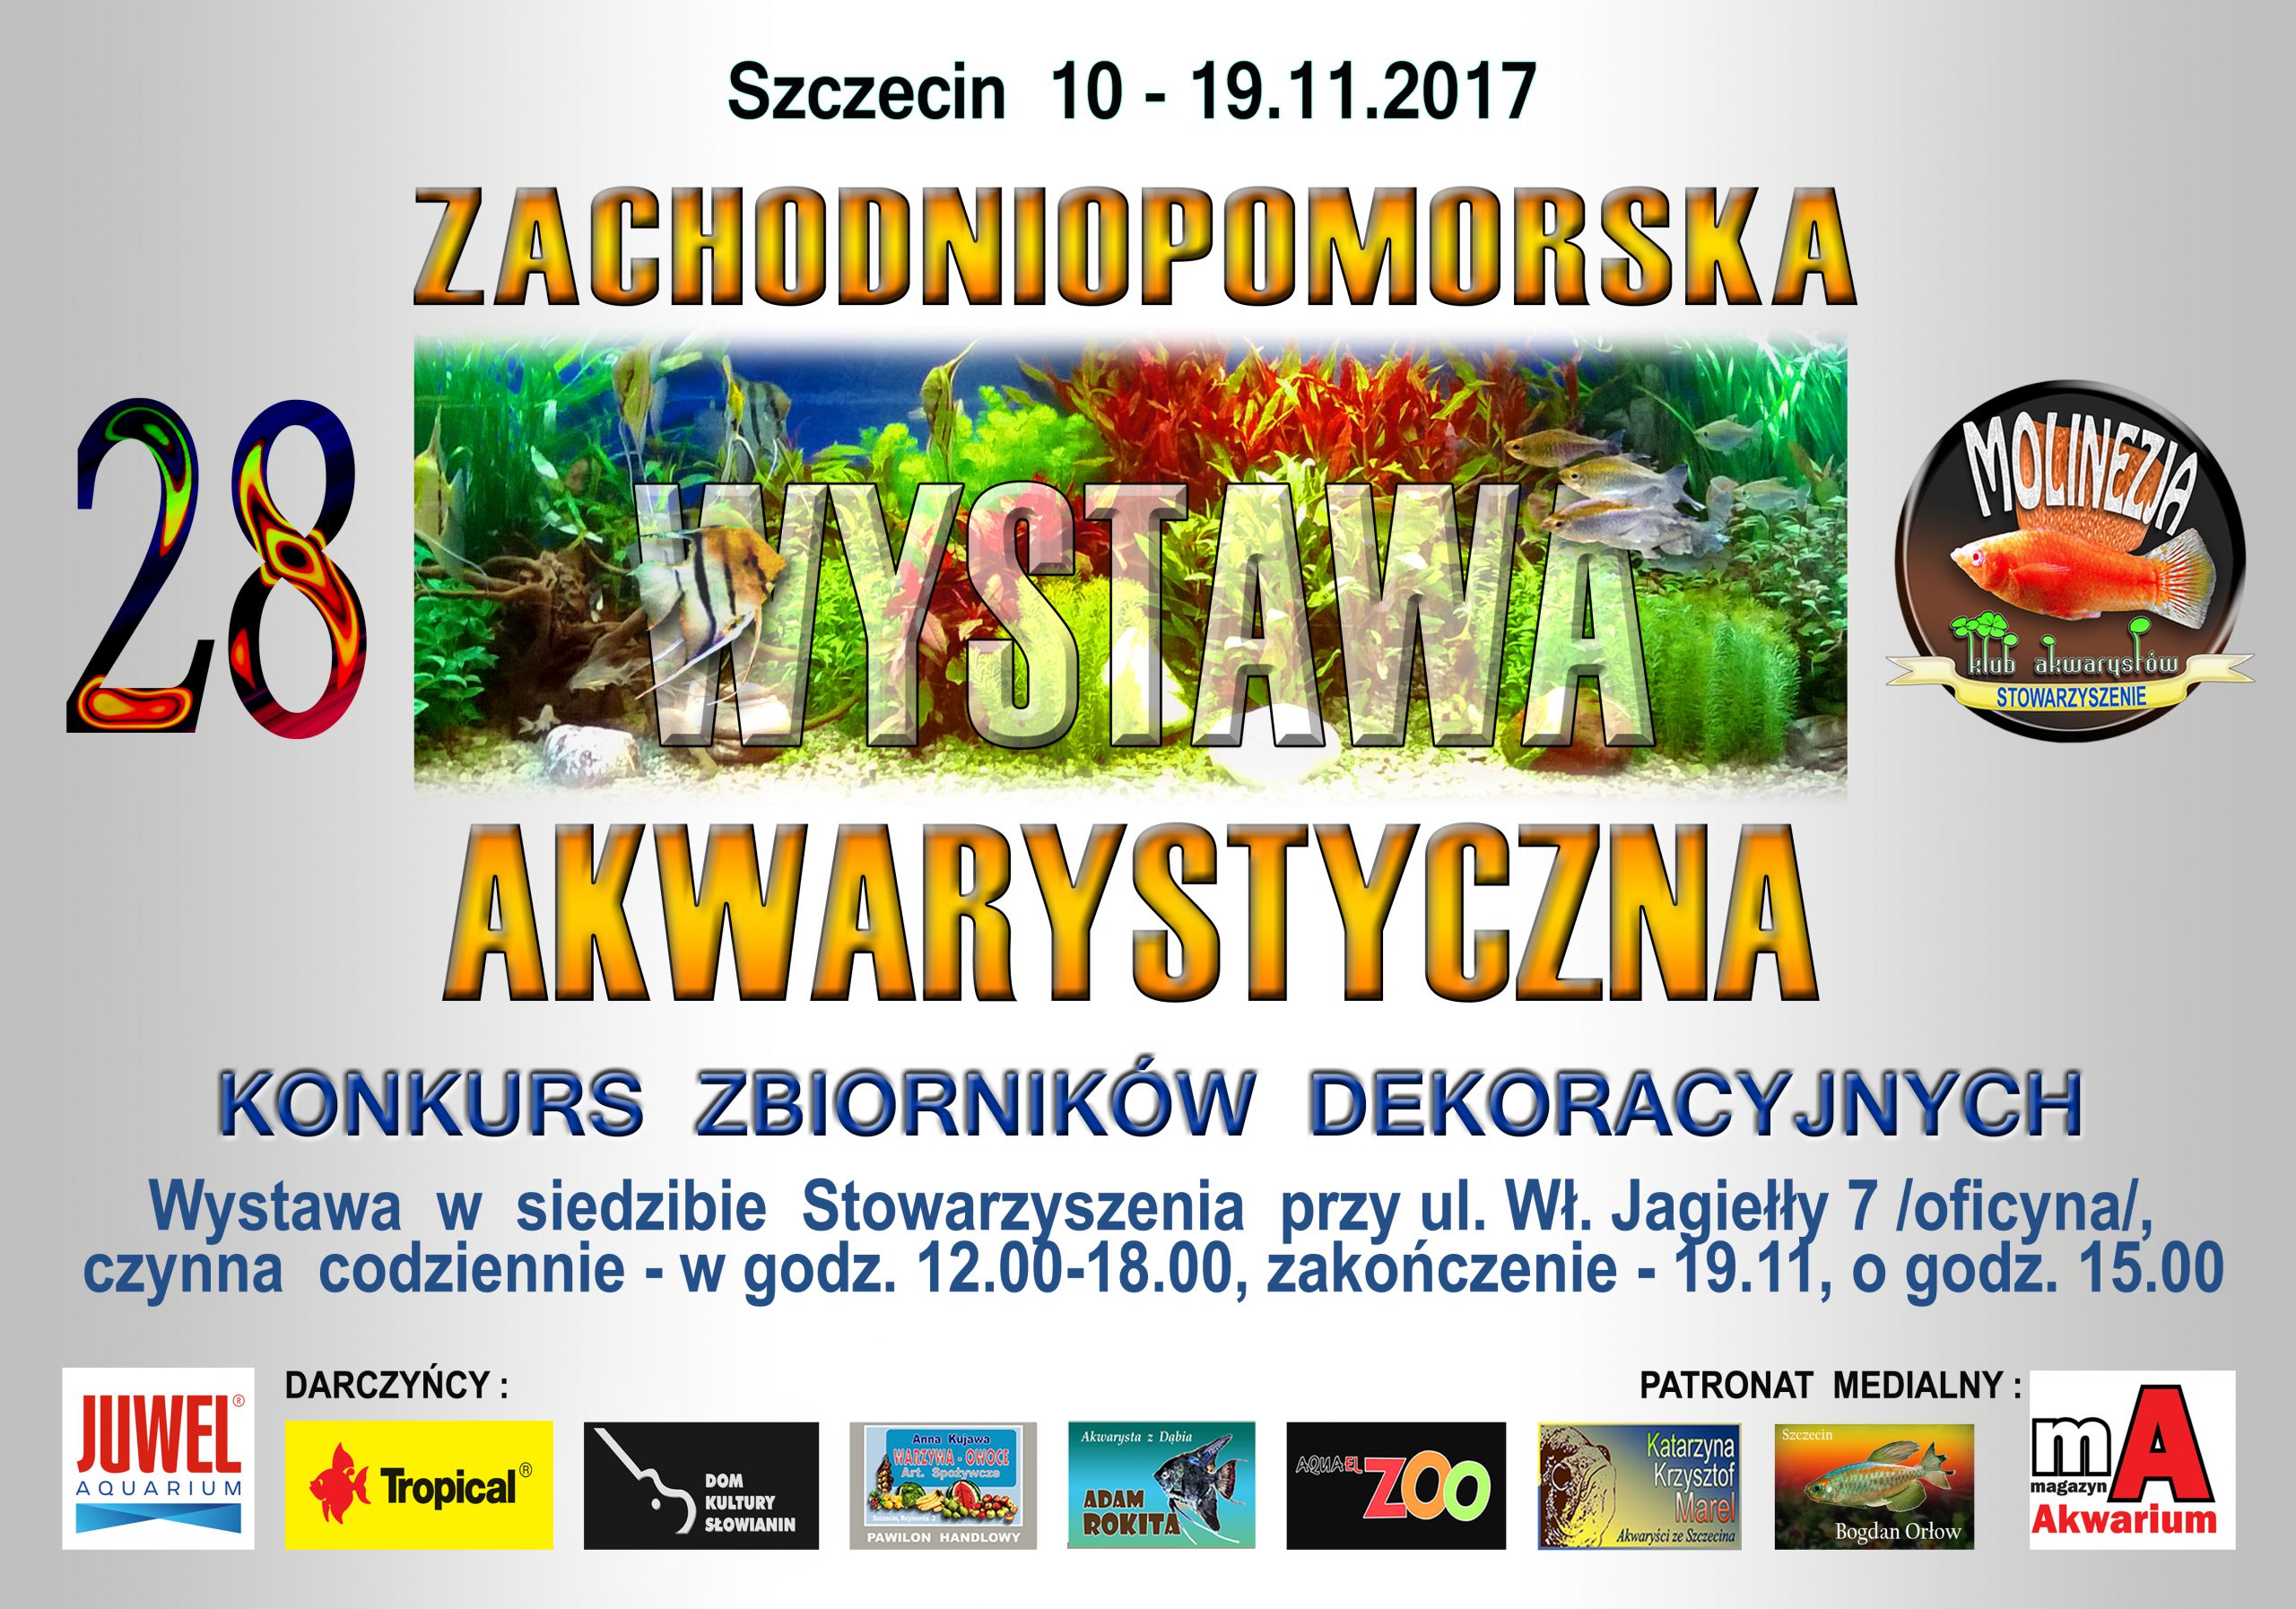 28 Zachodniopomorska Wystawa Akwarystyczna - Szczecin